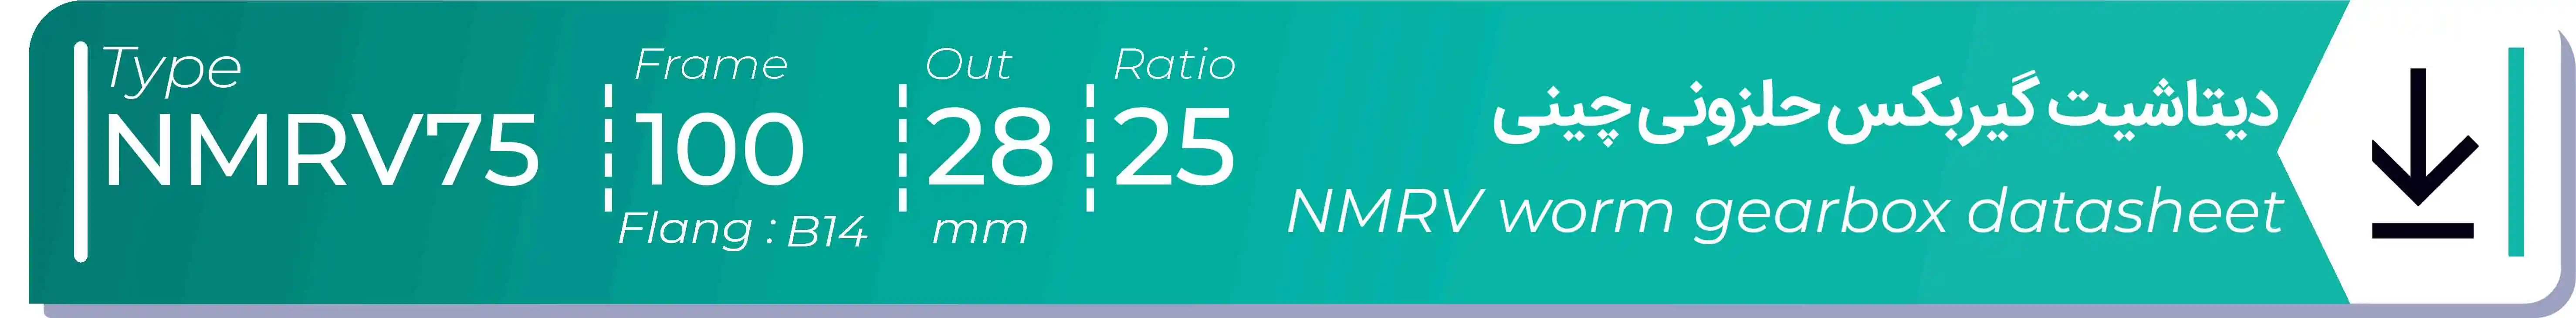  دیتاشیت و مشخصات فنی گیربکس حلزونی چینی   NMRV75  -  با خروجی 28- میلی متر و نسبت25 و فریم 100